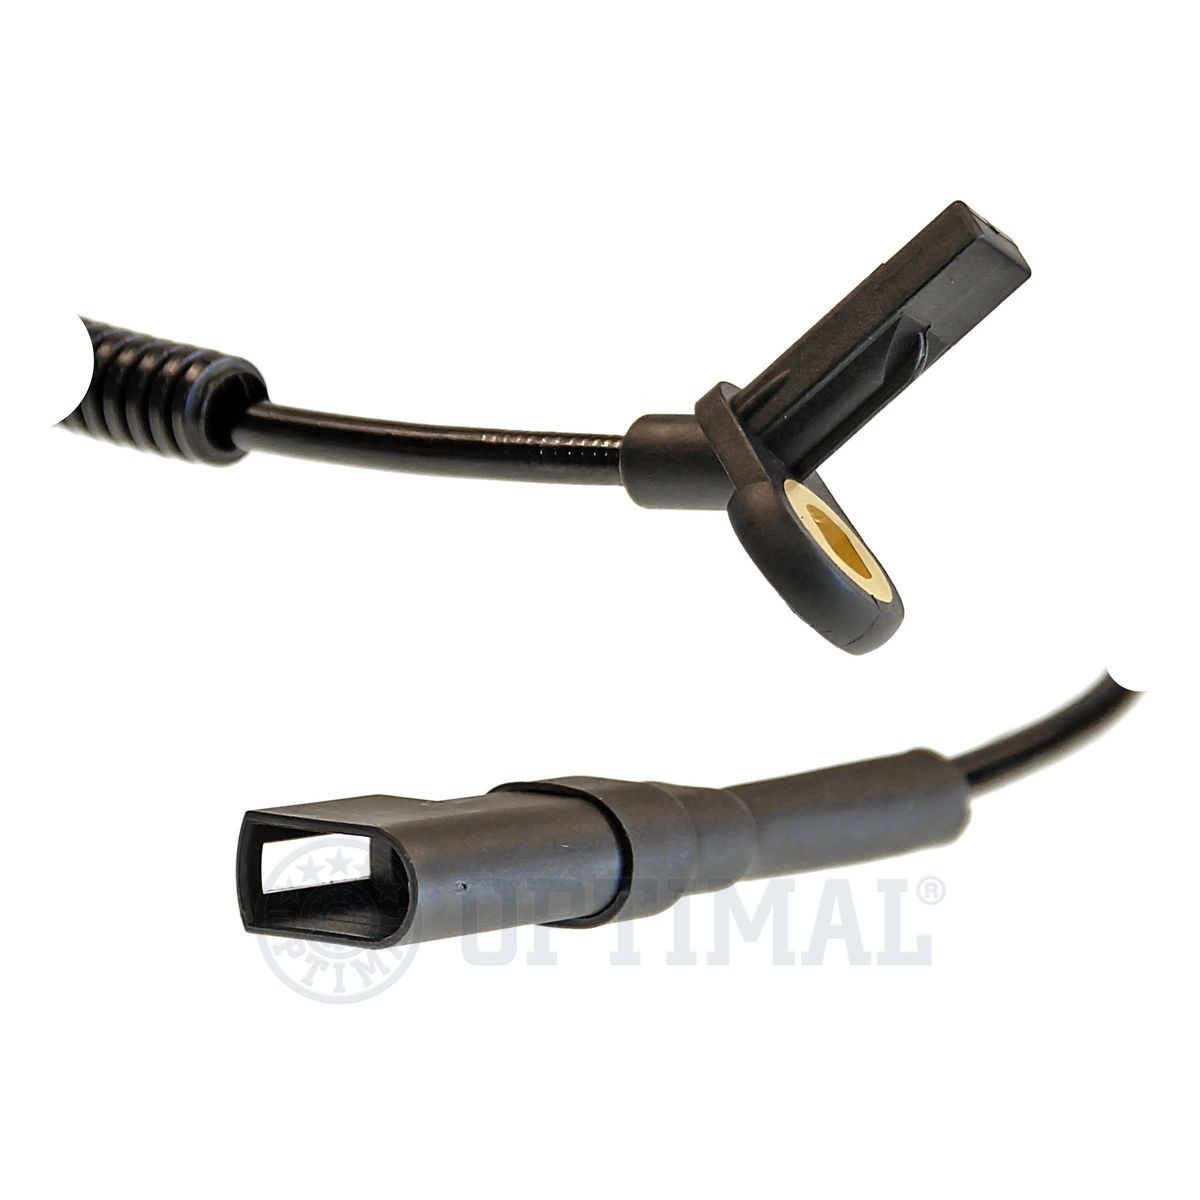 06S199 Anti lock brake sensor OPTIMAL 06-S199 review and test